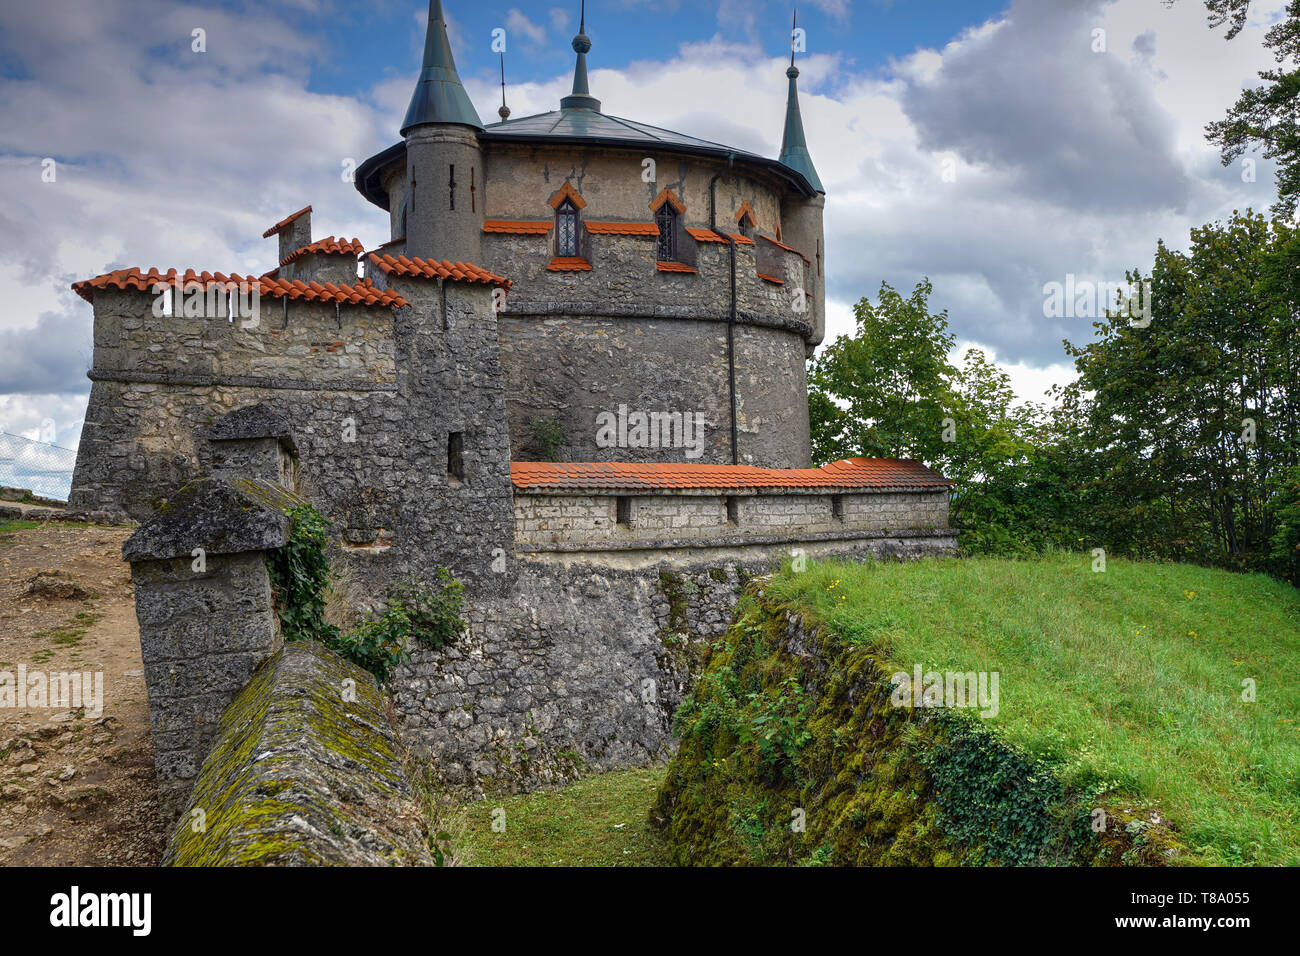 Tour Augusta au château de Lichtenstein. Il est connu sous le nom de "château de conte de fées de Württemberg". Lichtenstein, Allemagne Banque D'Images